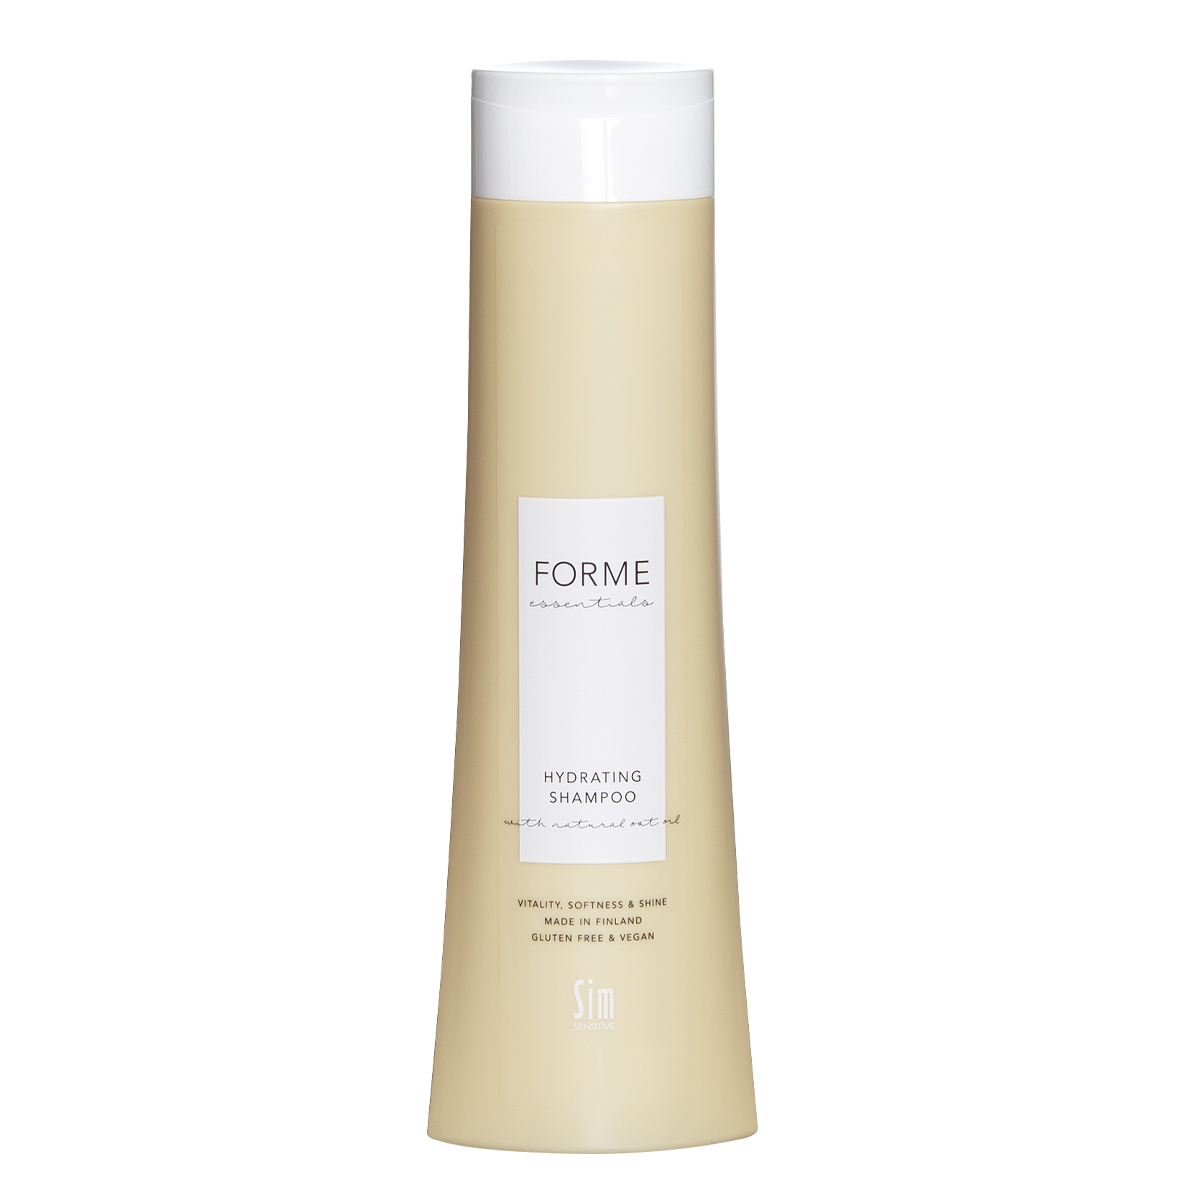 Forme Essentials Hydrating Shampoo увлажняющий шампунь 300 мл (Forme Essentials, Hydrating)